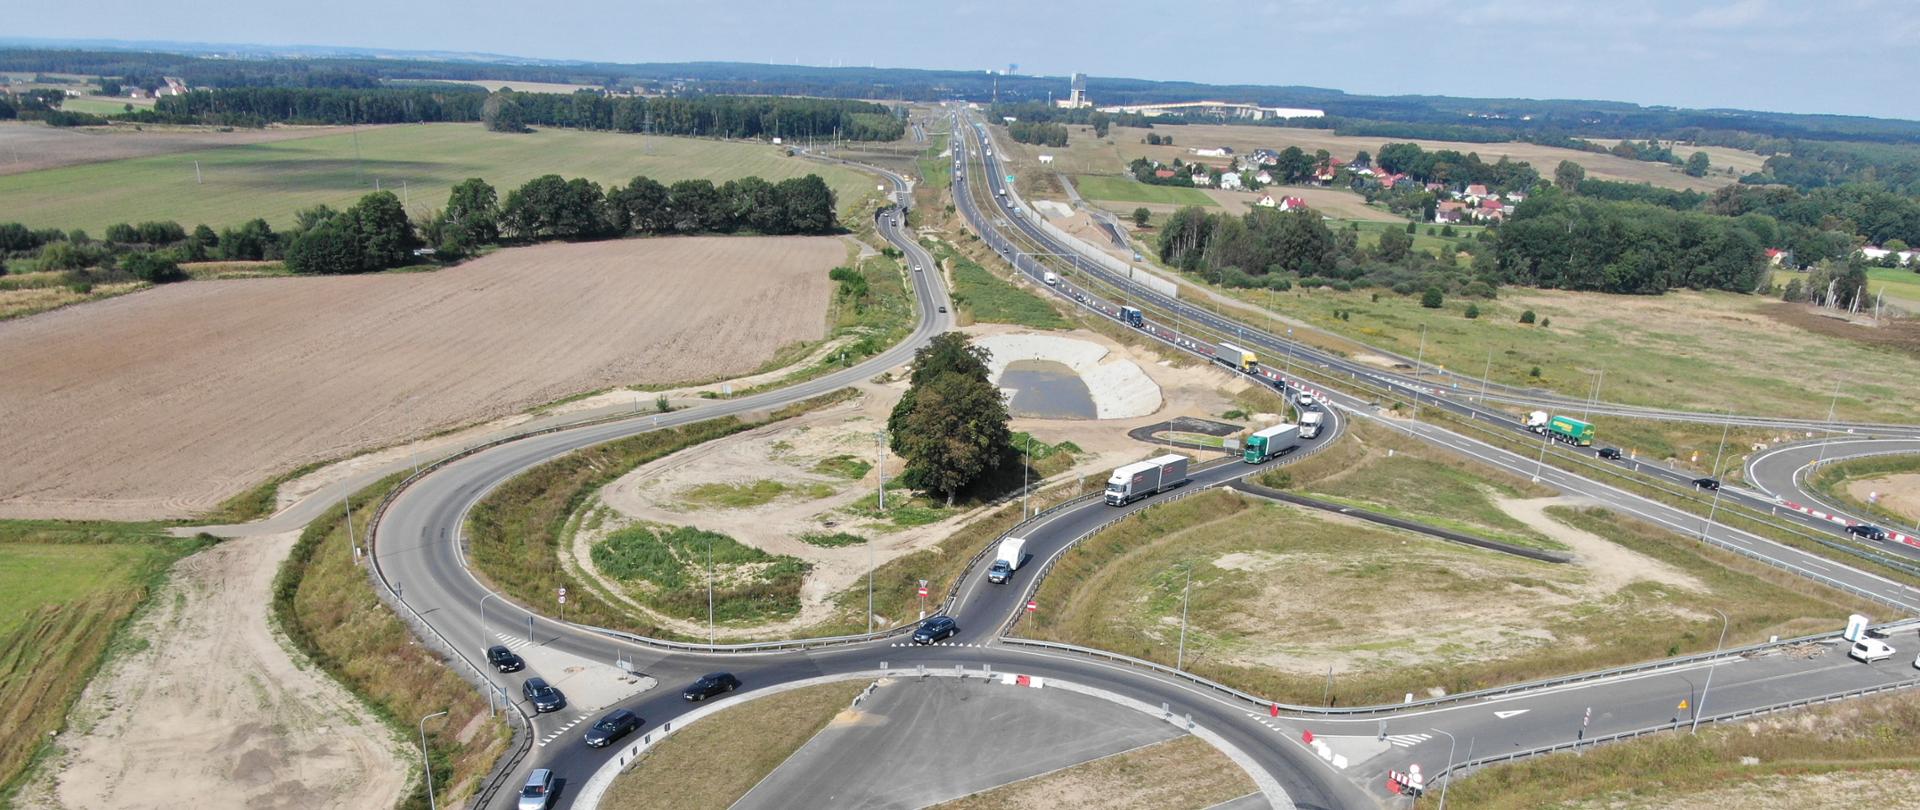  Na zdjęciu widać drogę ekspresową S3 na odcinku od Polkowic i Lubina, która jest na bardzo dużym etapie zaawansowania prac. 